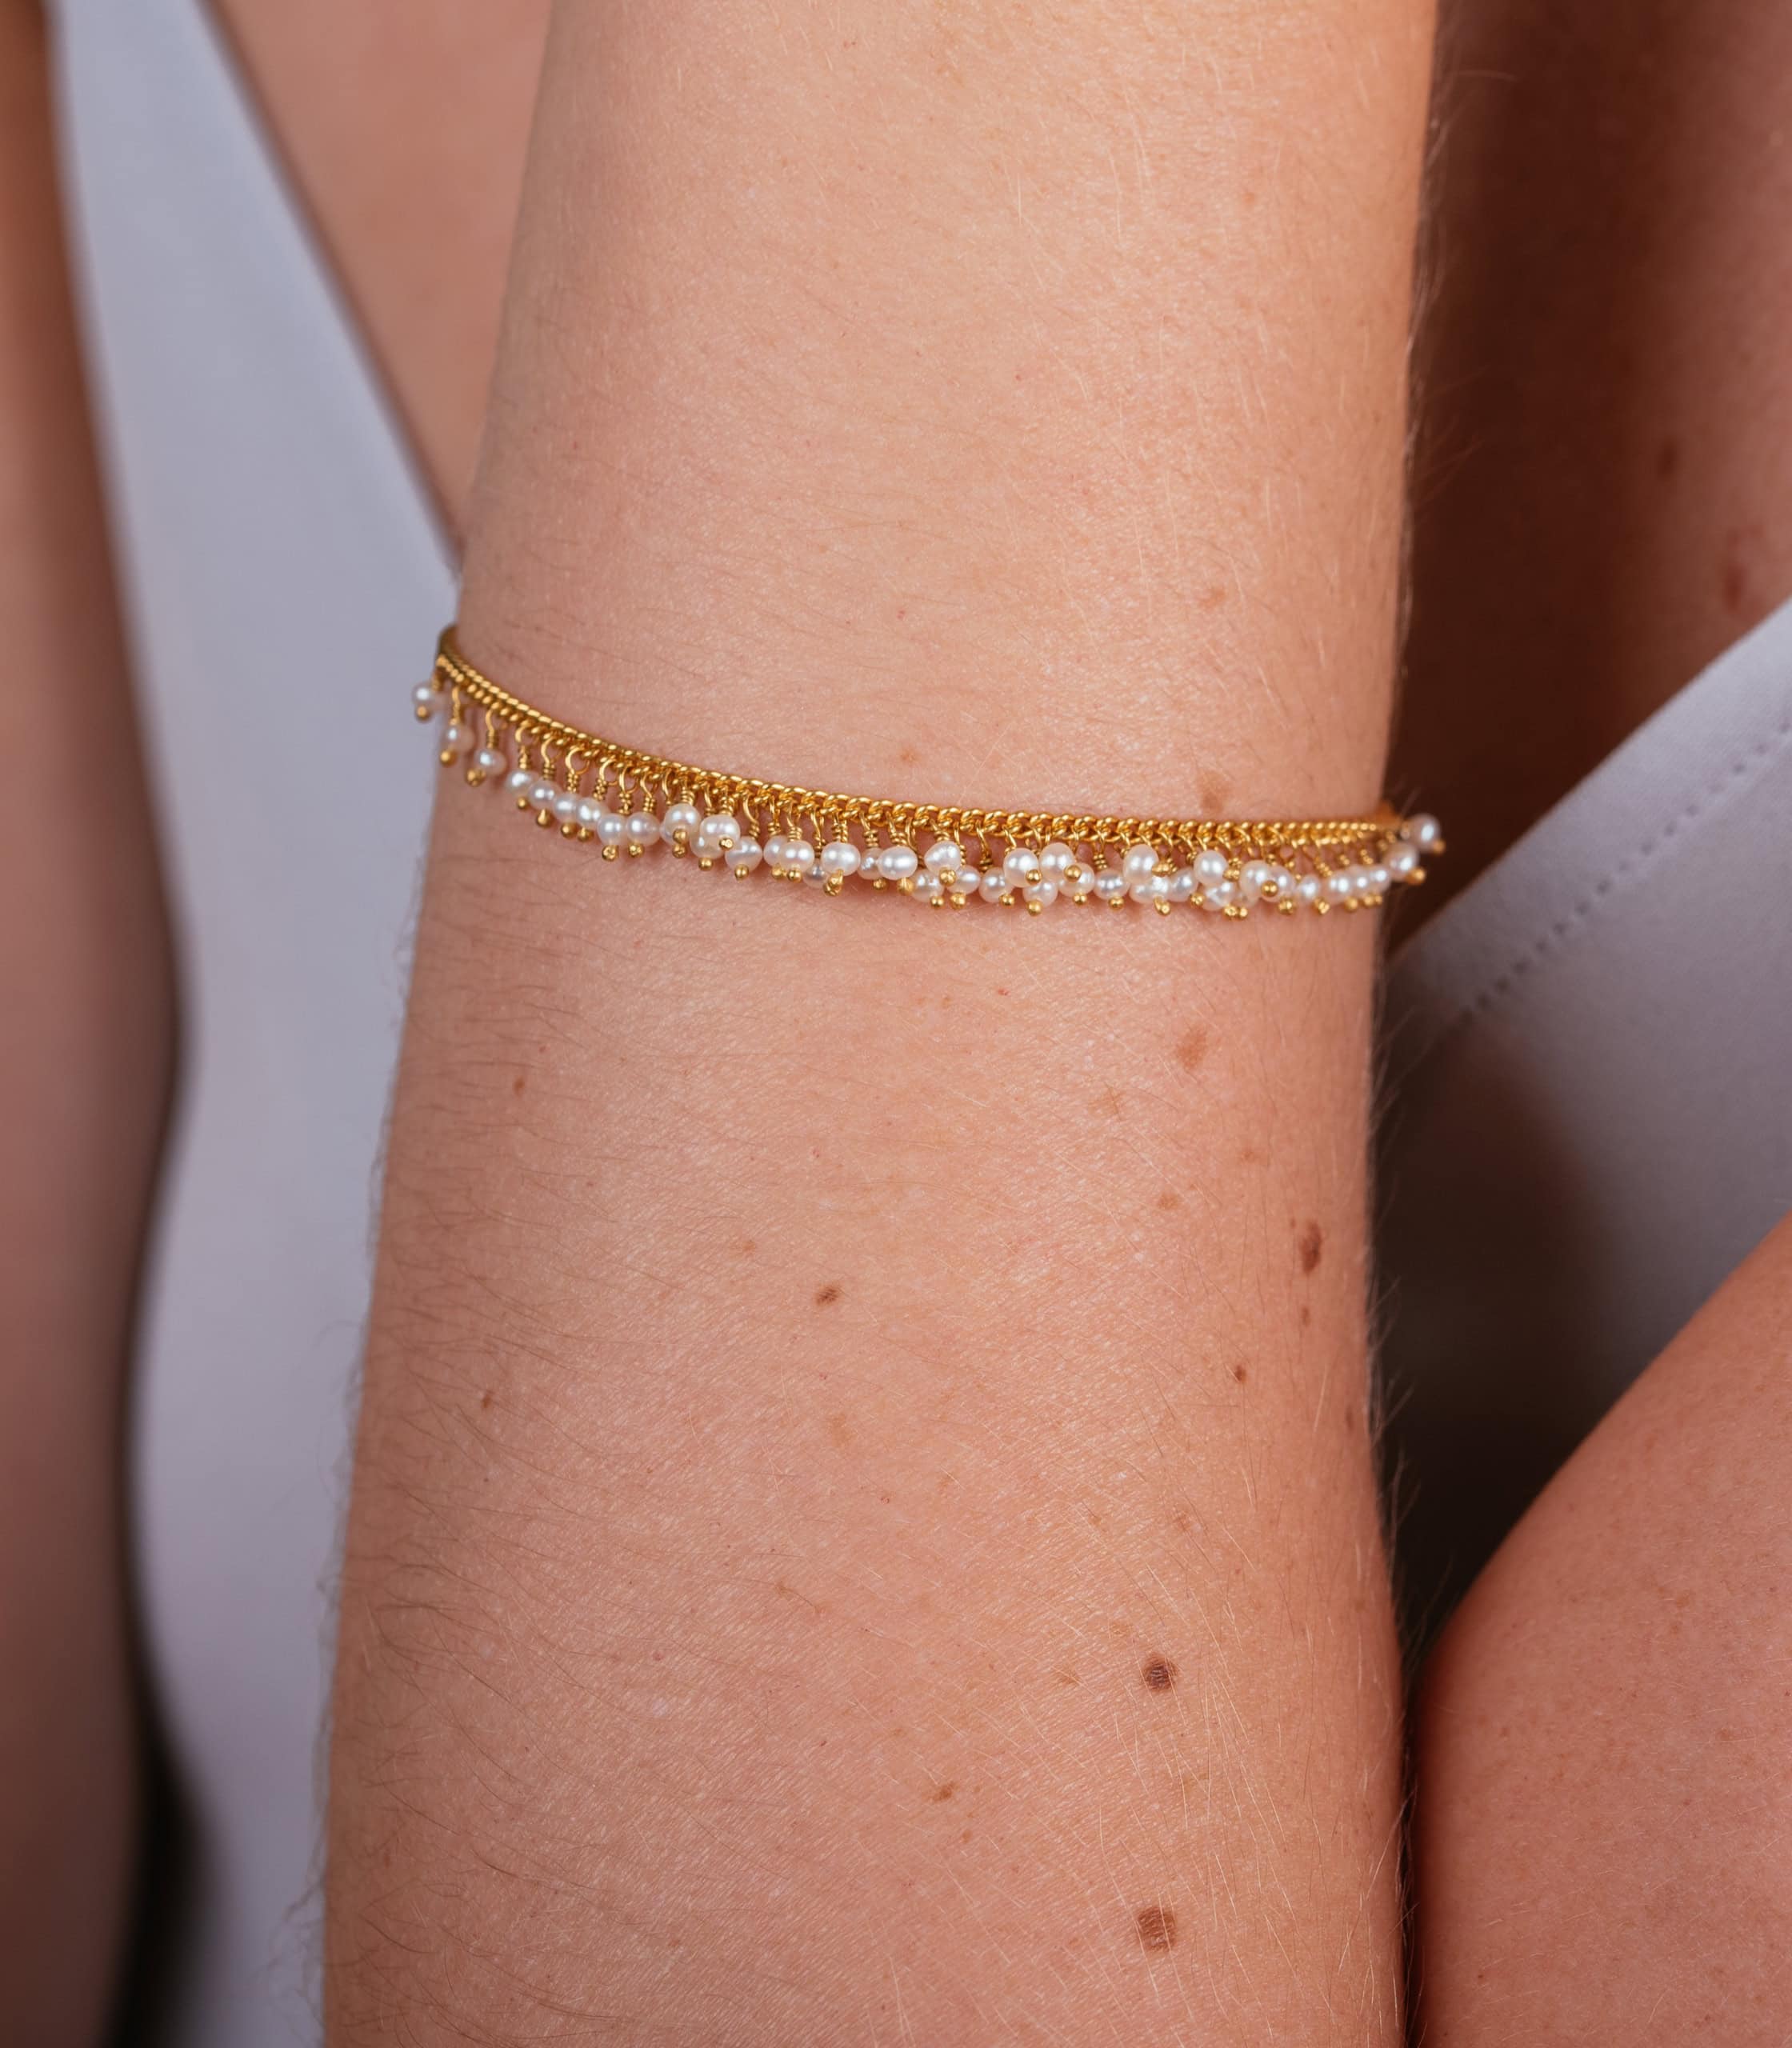 Pearl bracelet on a model's arm